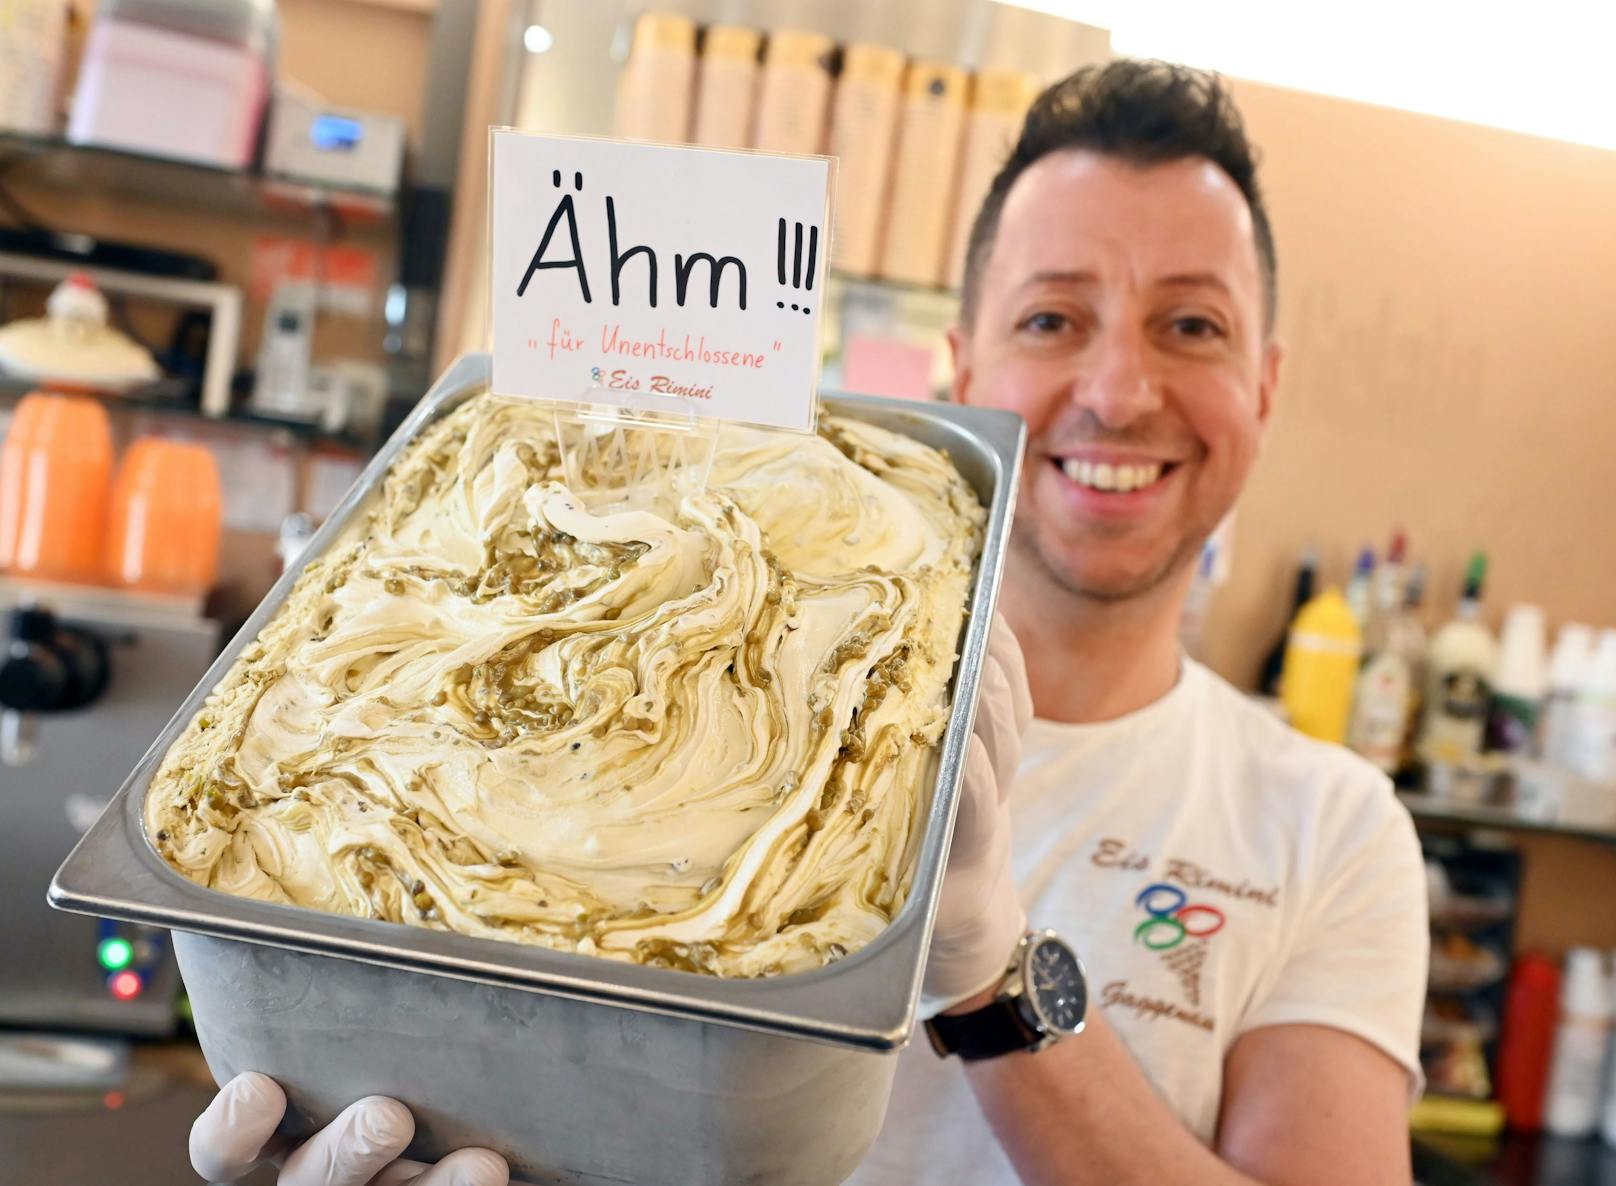 Salonbesitzer Alessandro Cimino mit seiner neuen Eiskreation "Ähm".